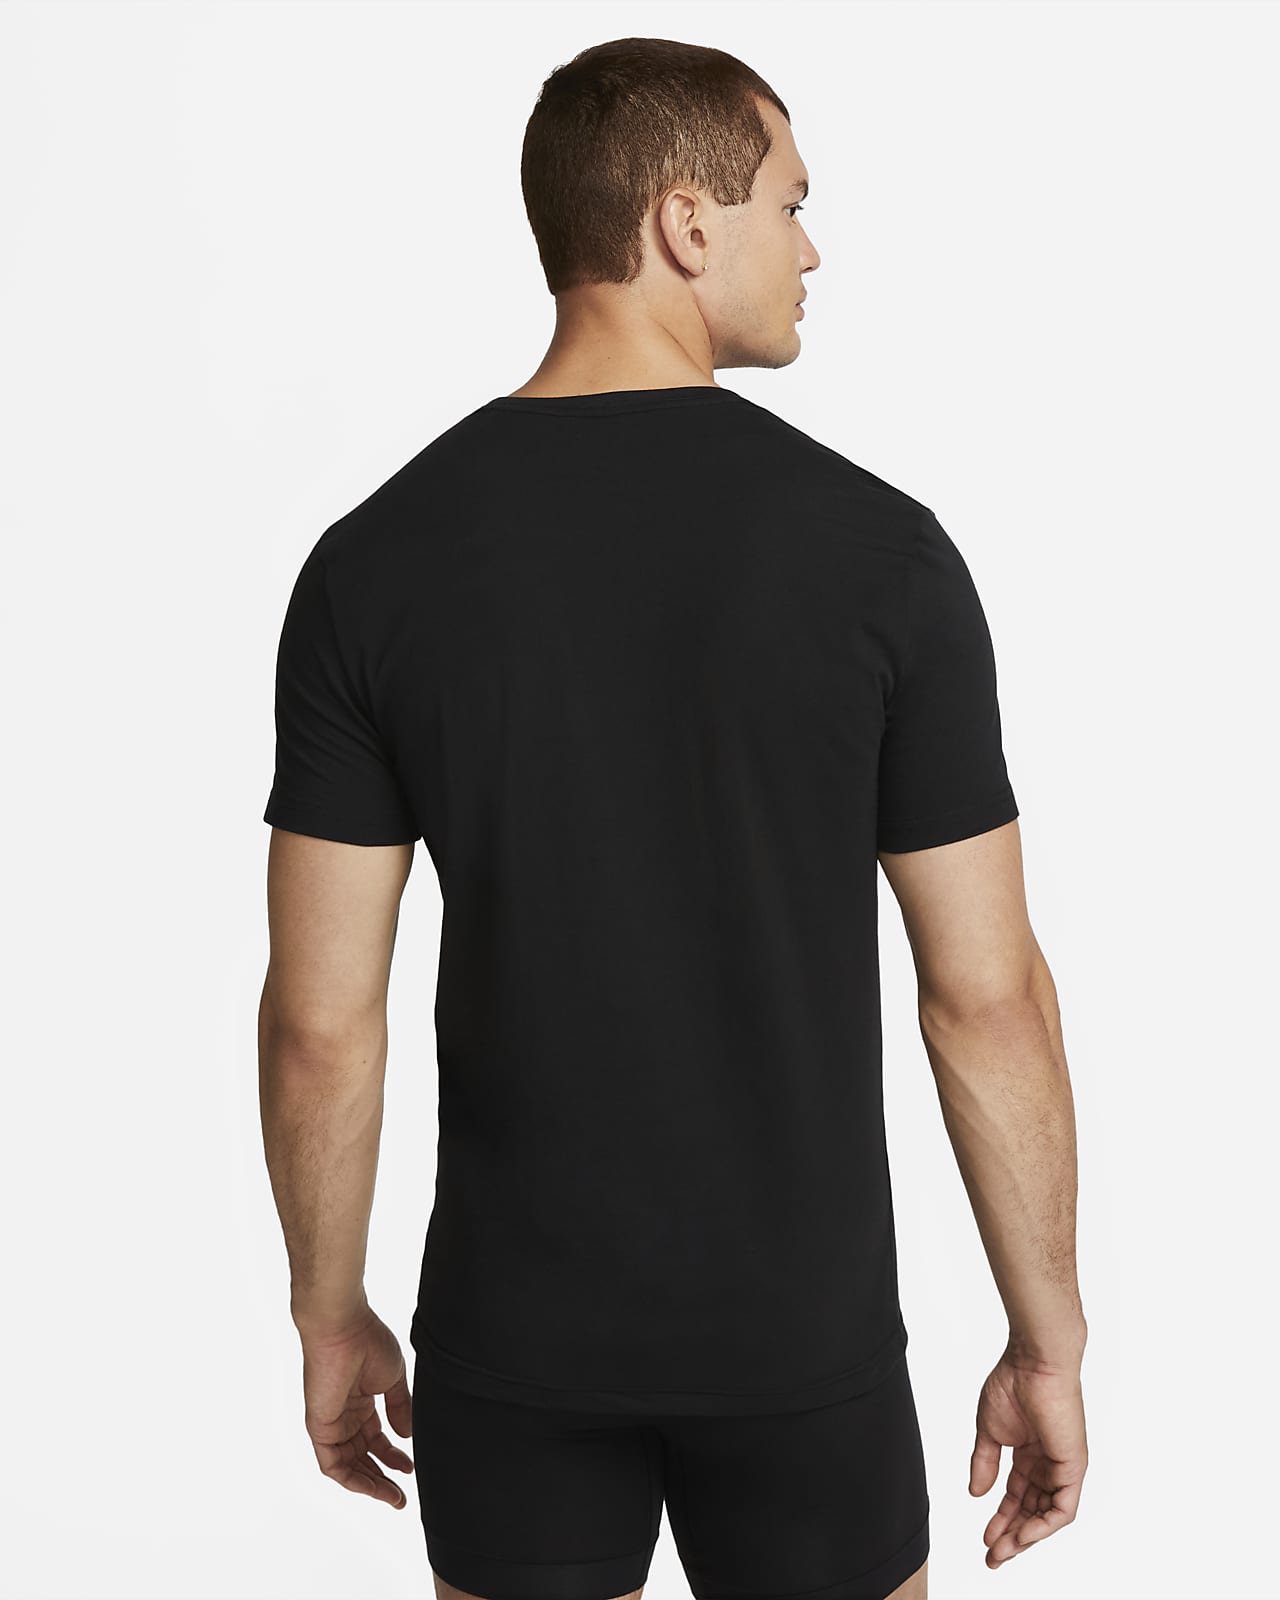 Camiseta interior Caballero cuello redondo Dry Fit 577